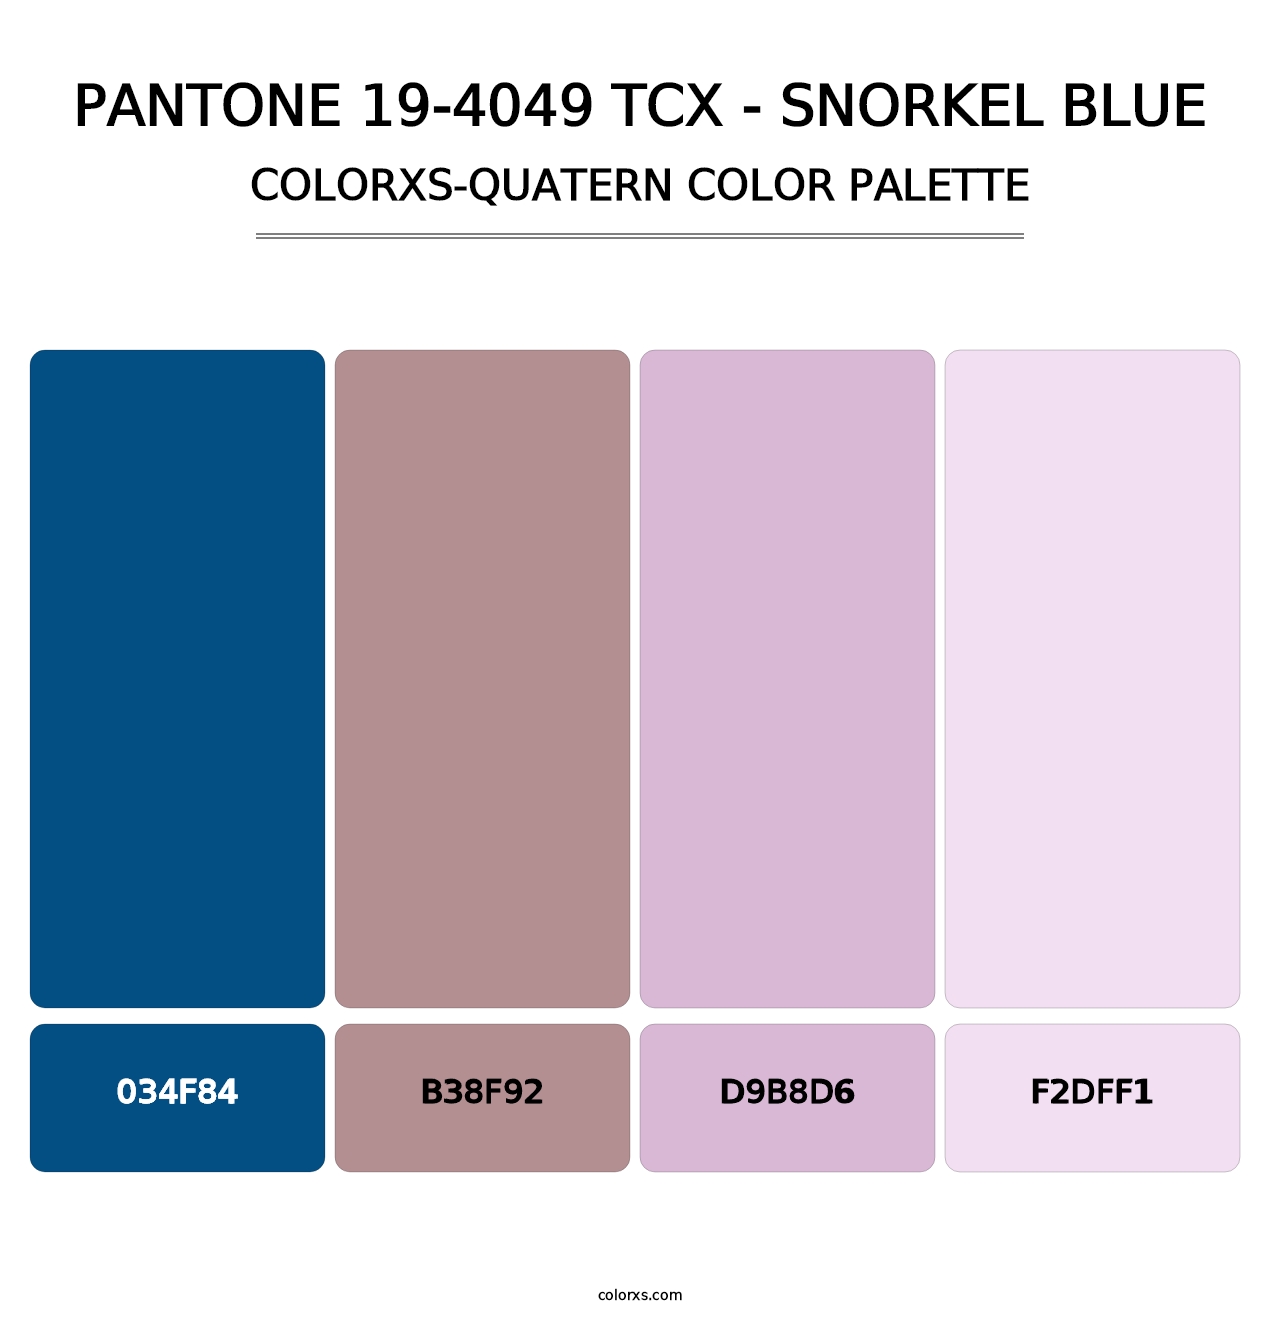 PANTONE 19-4049 TCX - Snorkel Blue - Colorxs Quatern Palette